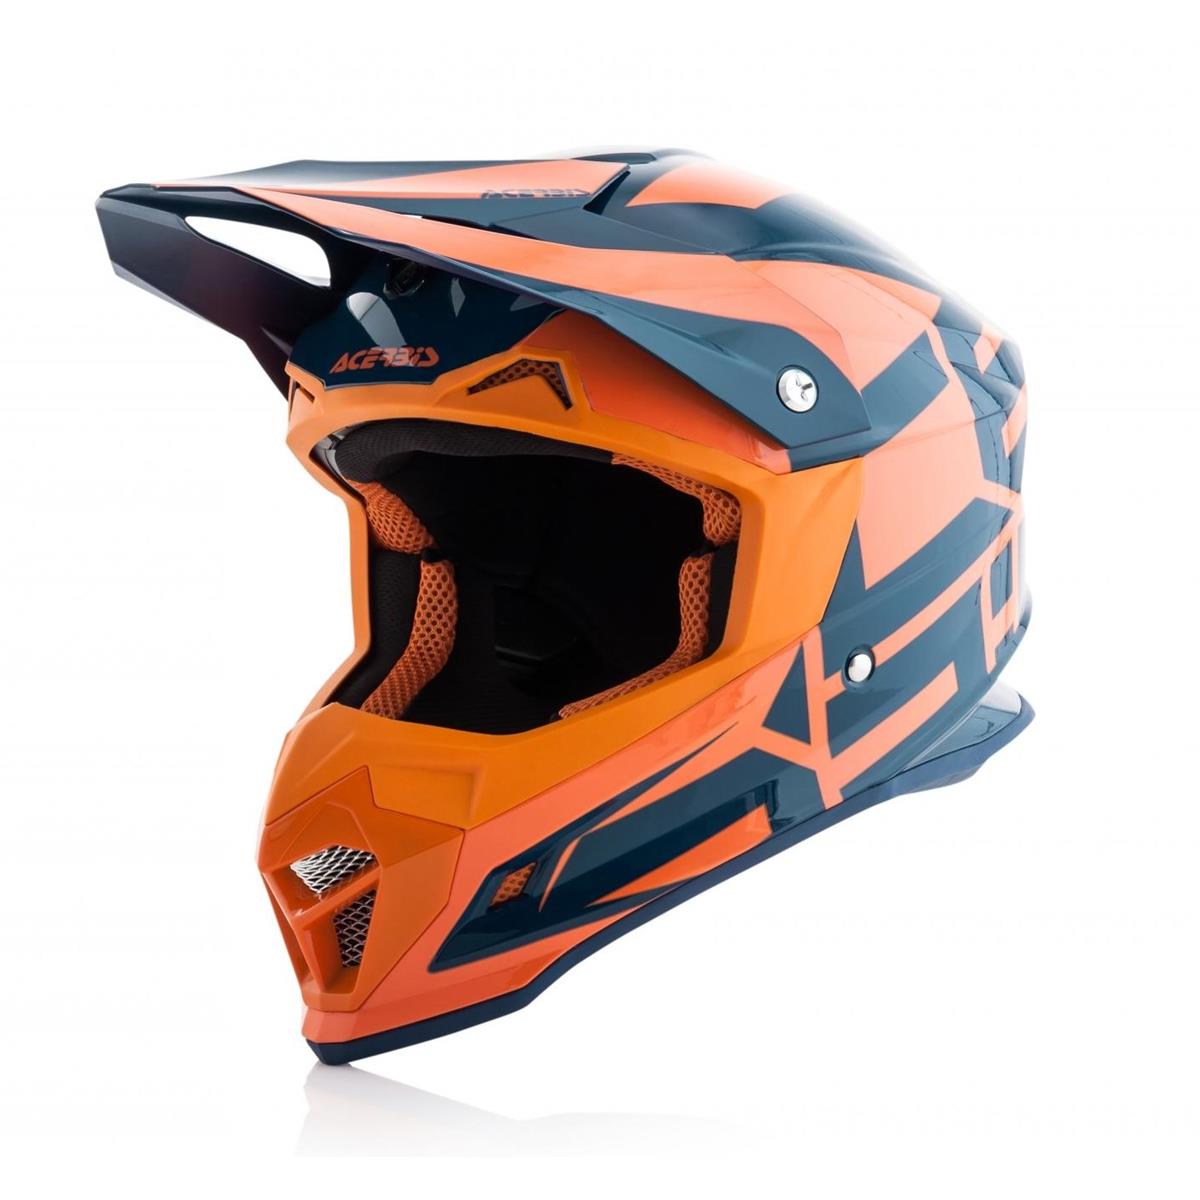 Acerbis Helm Profile 4 Orange/Blau